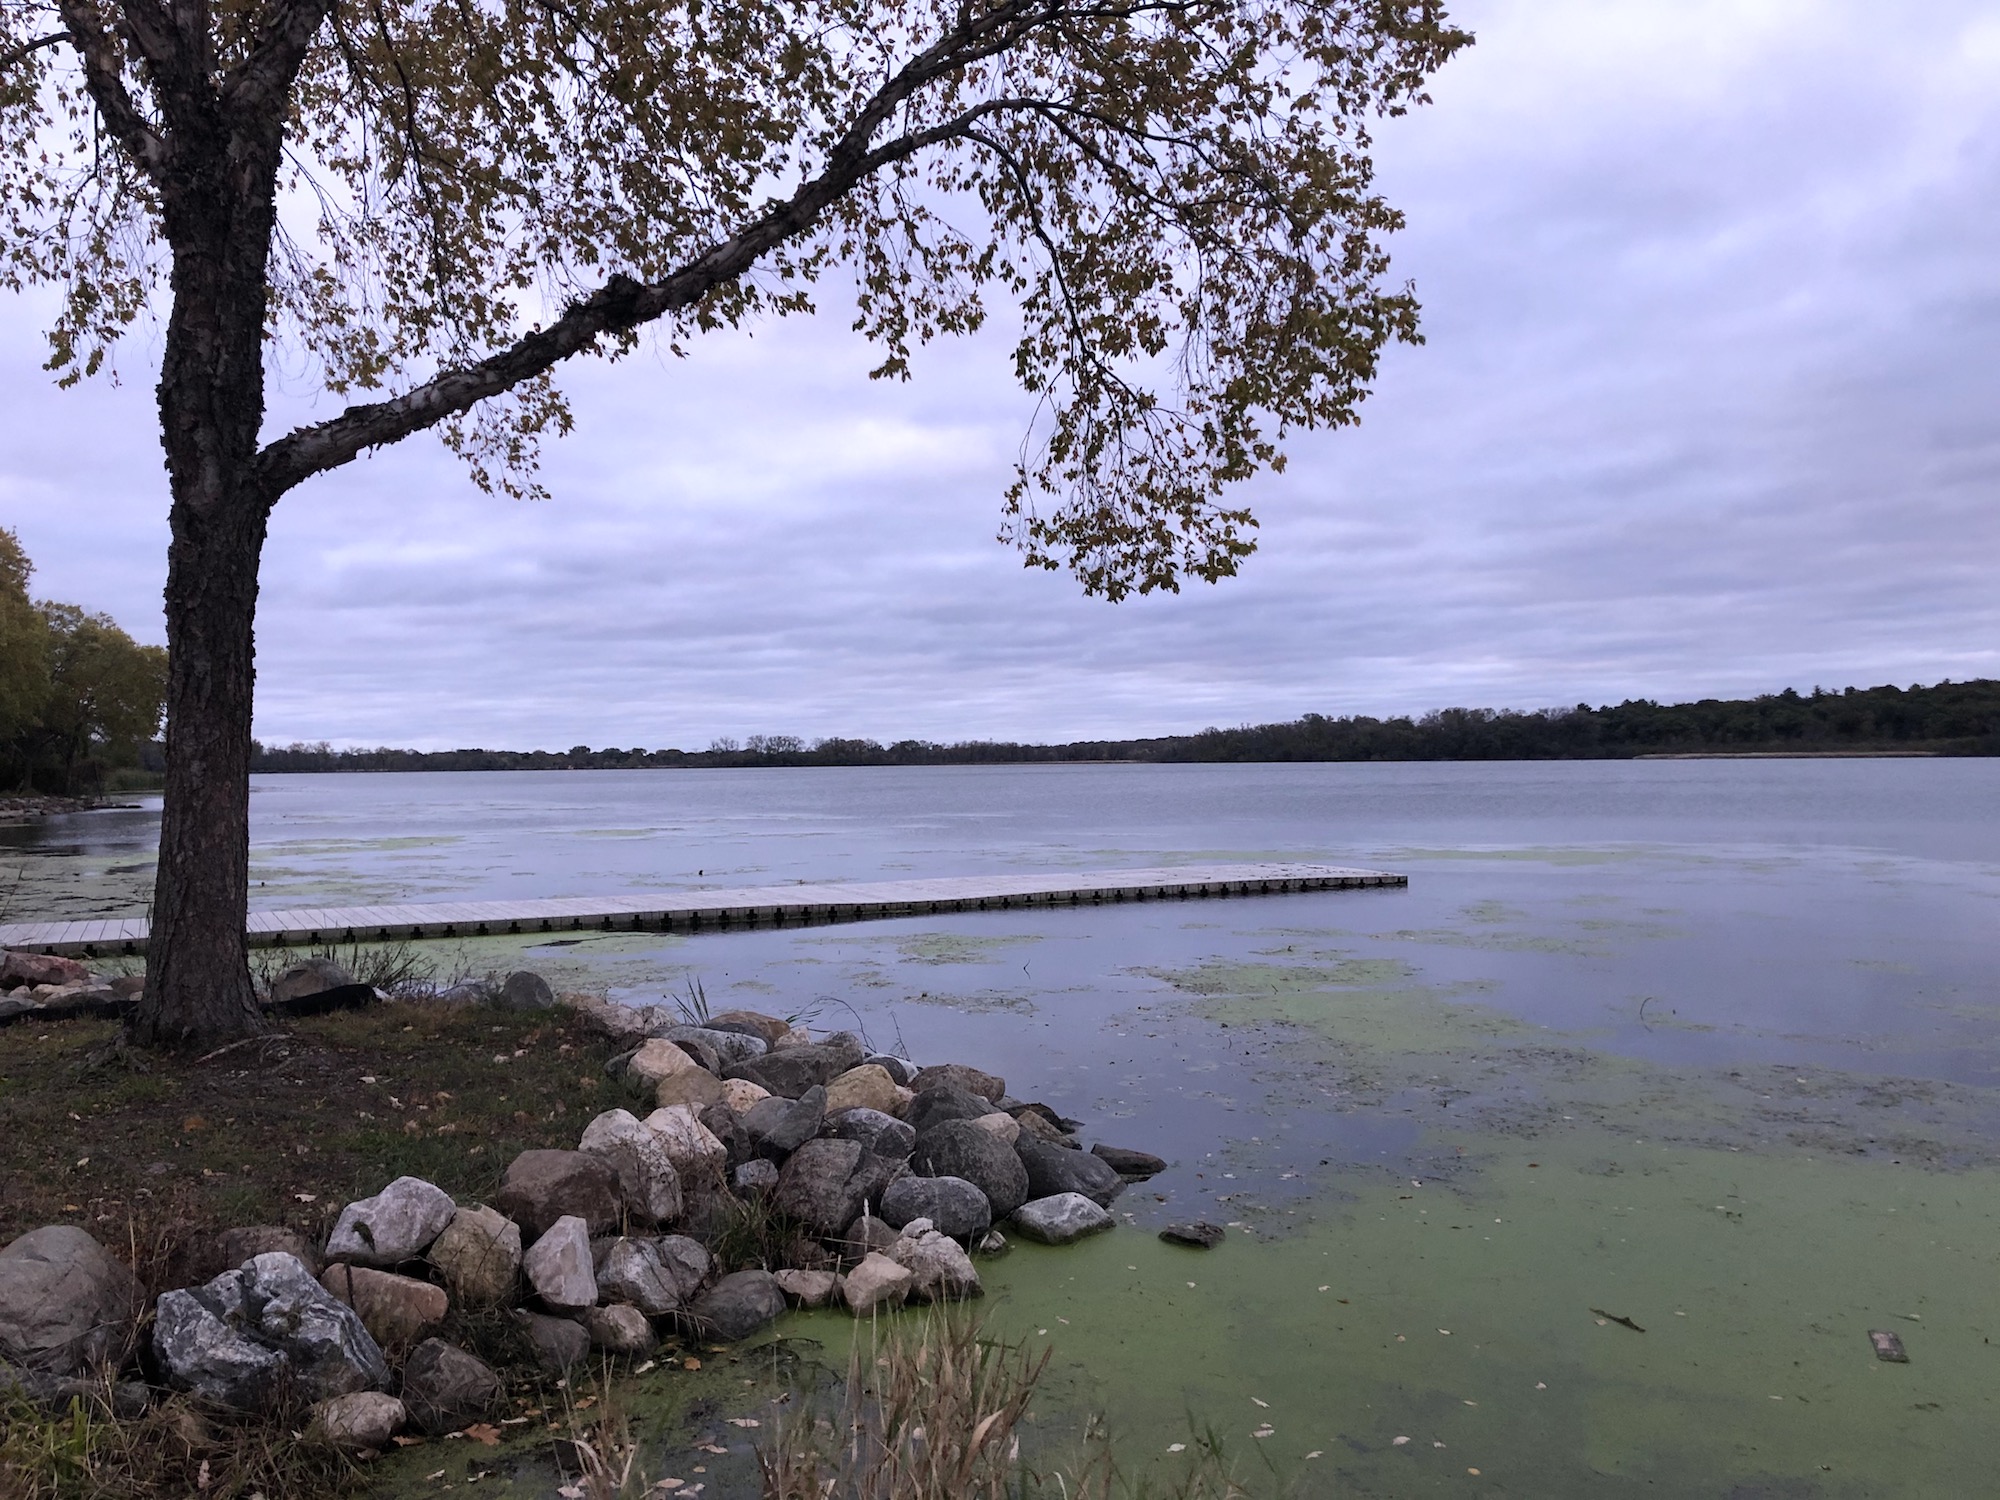 Lake Wingra on October 16, 2019.